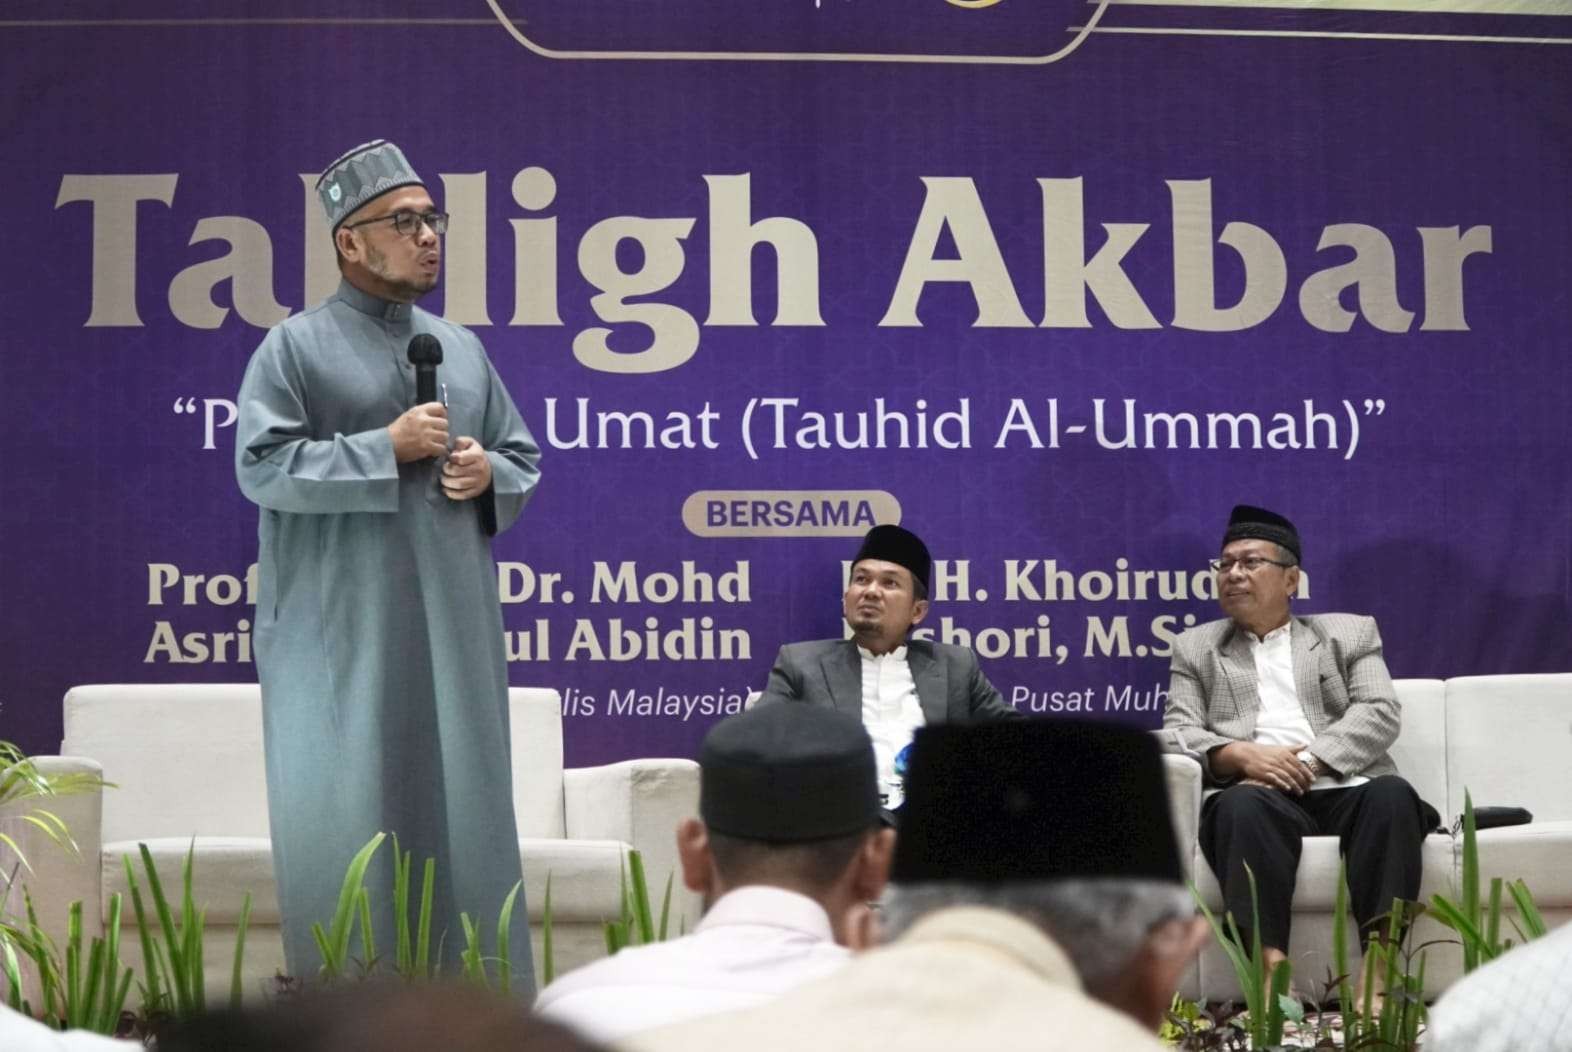 Tabligh Akbar bertajuk “Persatuan Umat (Tauhid al-Ummah)” di Universitas Ahmad Dahlan Yogyakarta, Kamis. (Foto: muhammadiyah.or.id)